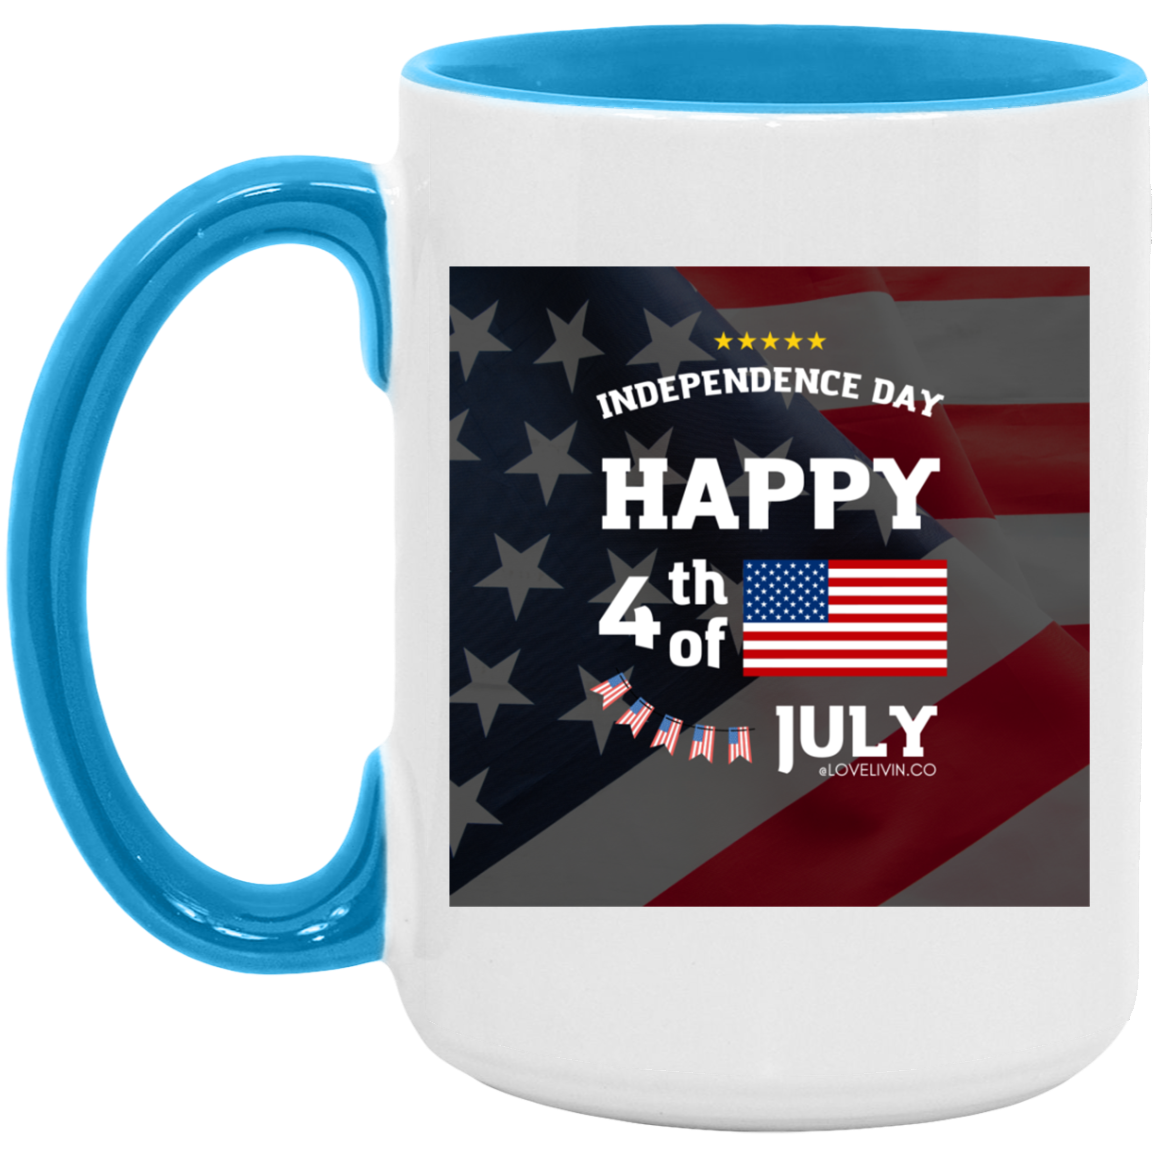 Independence day. USA-FLAG-15oz. Accent Mug